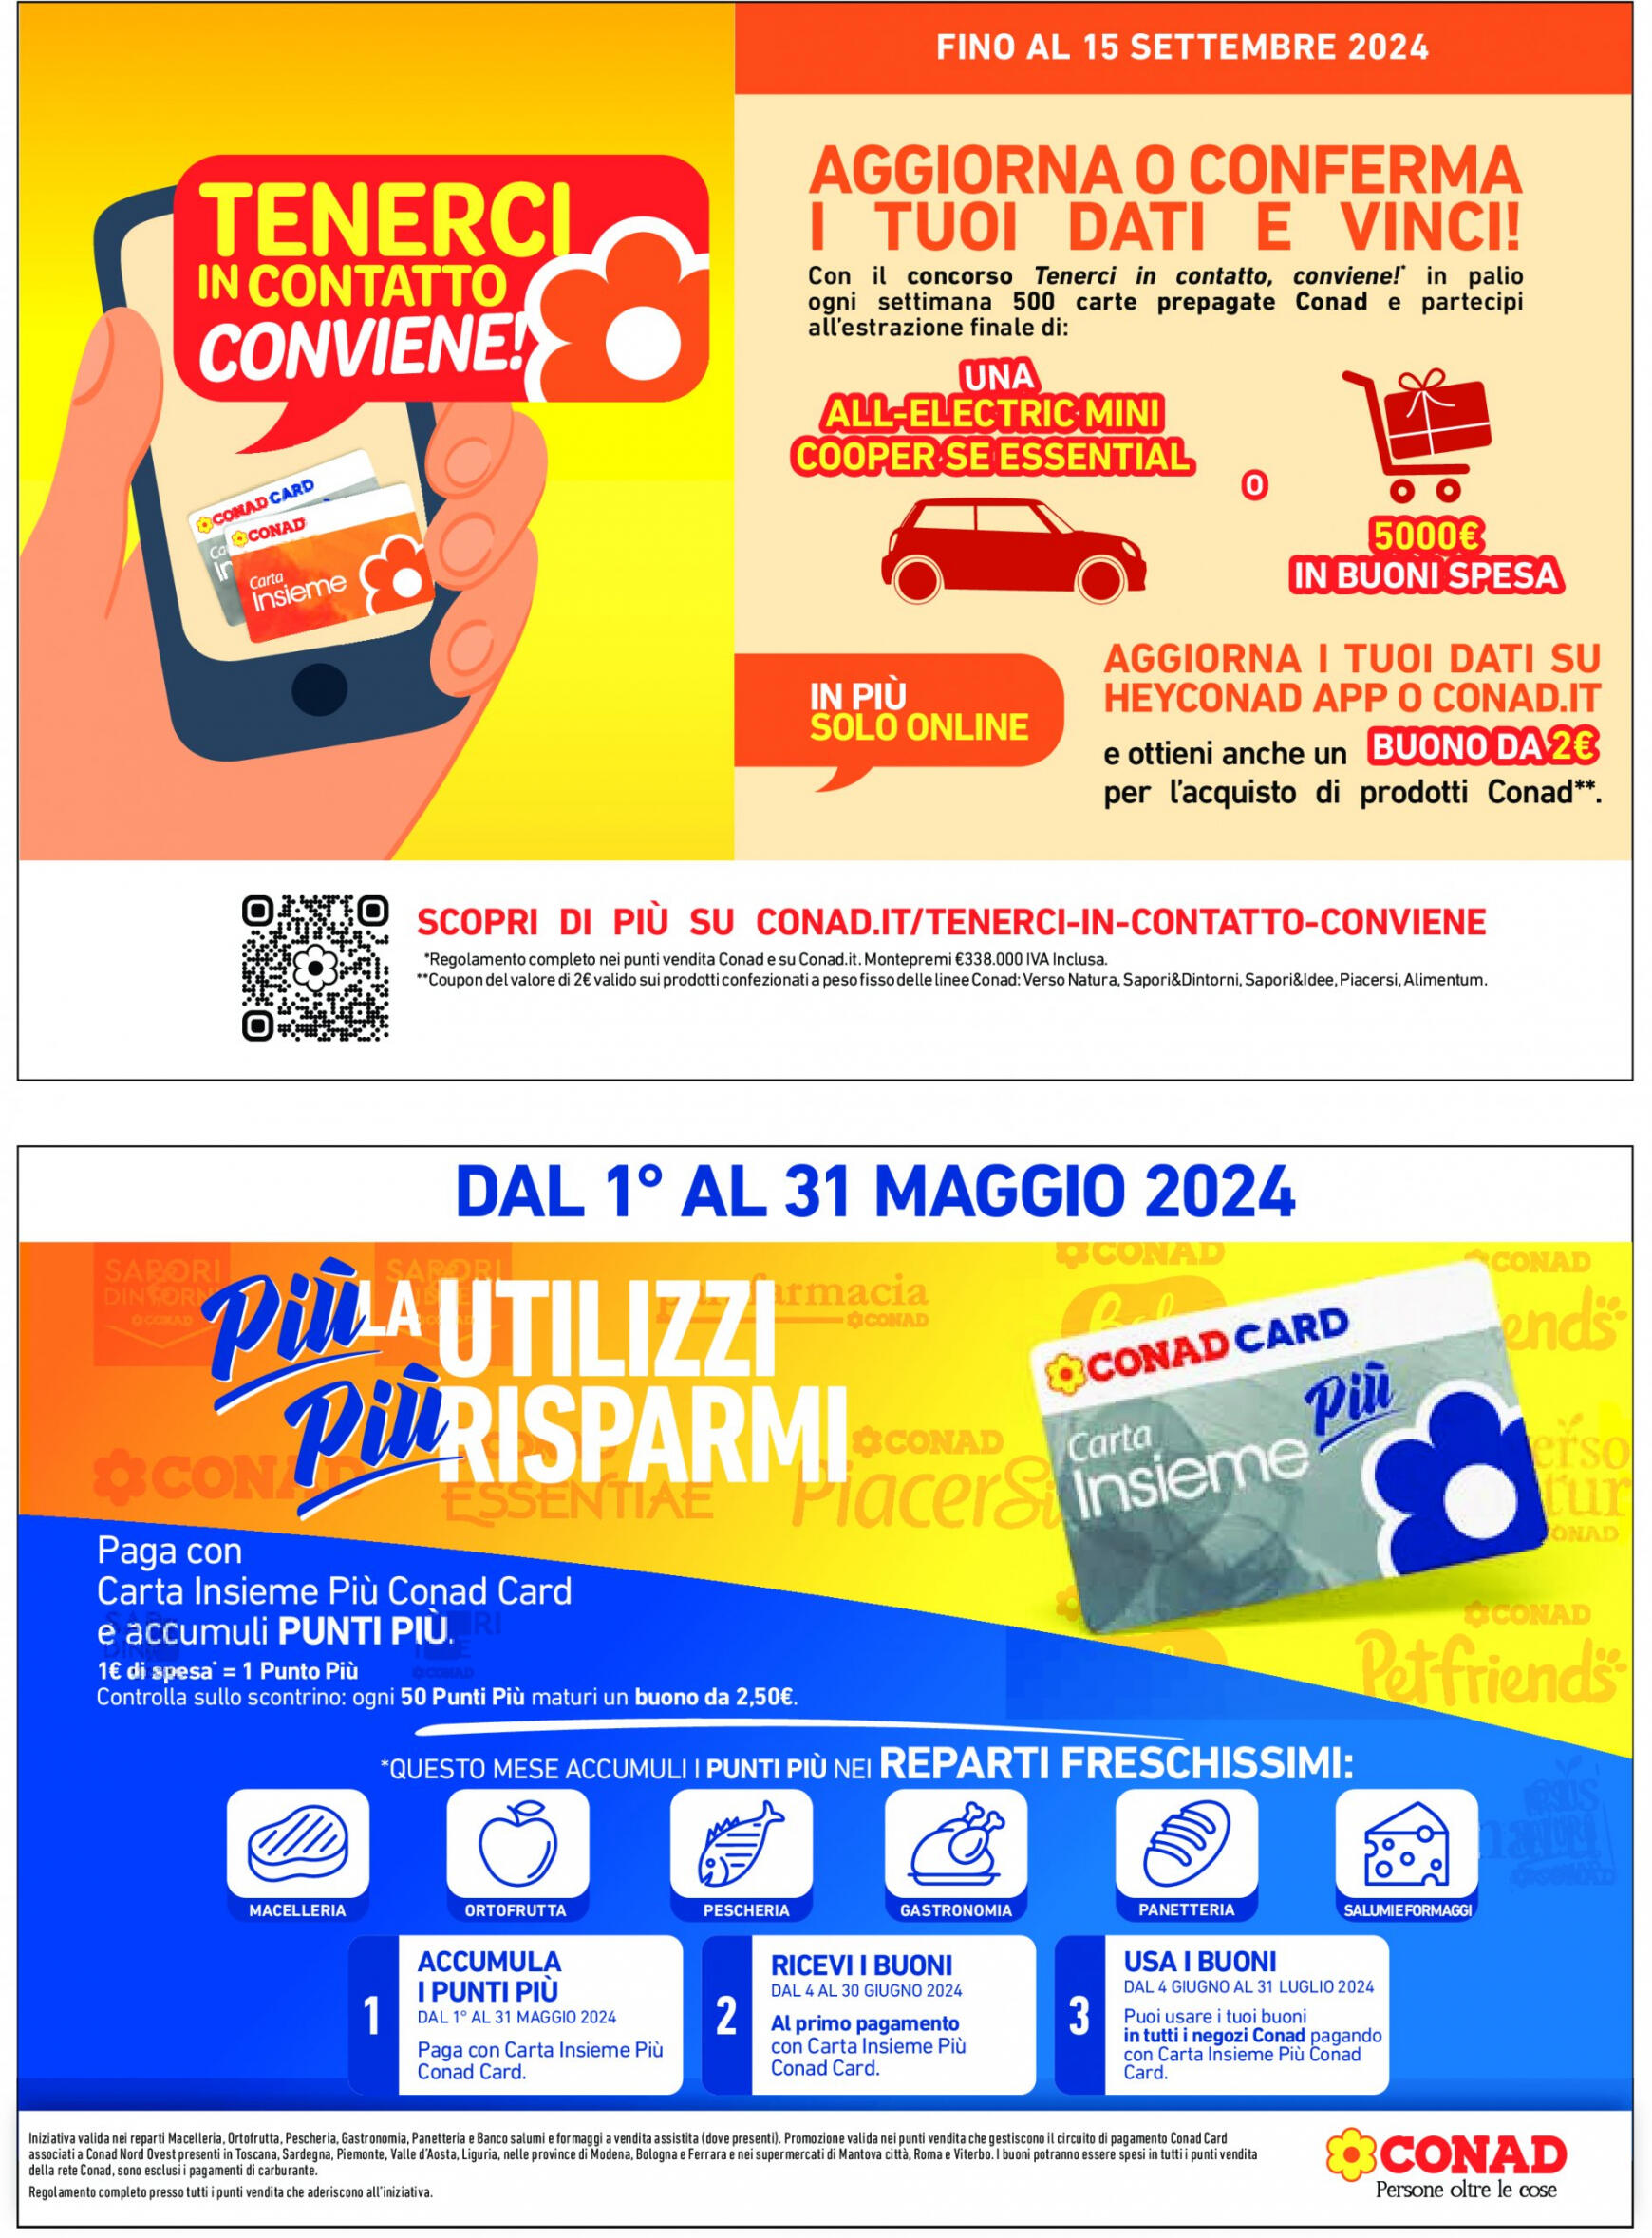 conad - Nuovo volantino Conad - miPREMIO 17.04. - 14.05. - page: 3